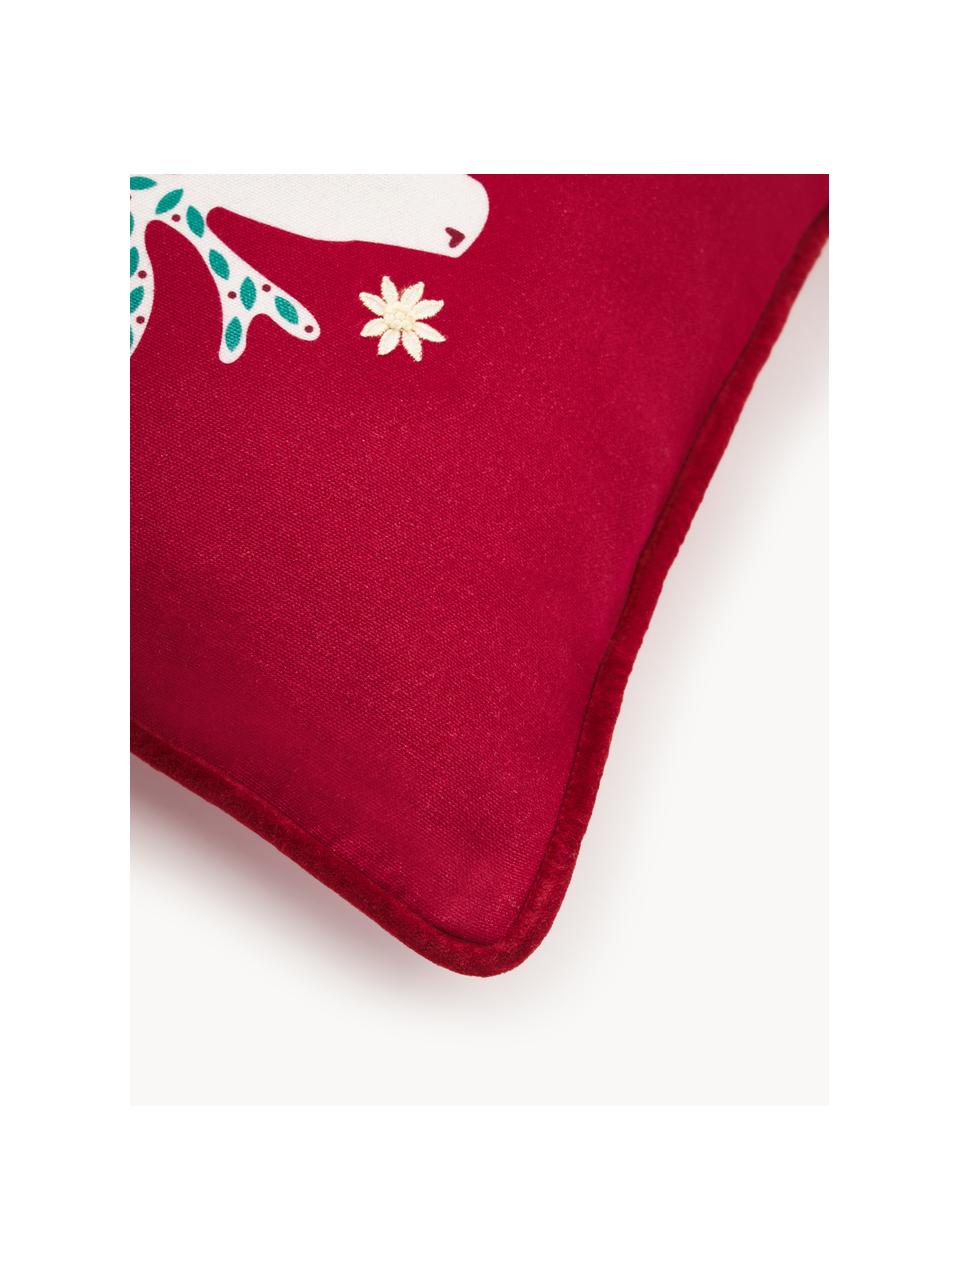 Poszewka na poduszkę Prancer, Tapicerka: 100% bawełna, Czerwony, biały, S 45 x D 45 cm